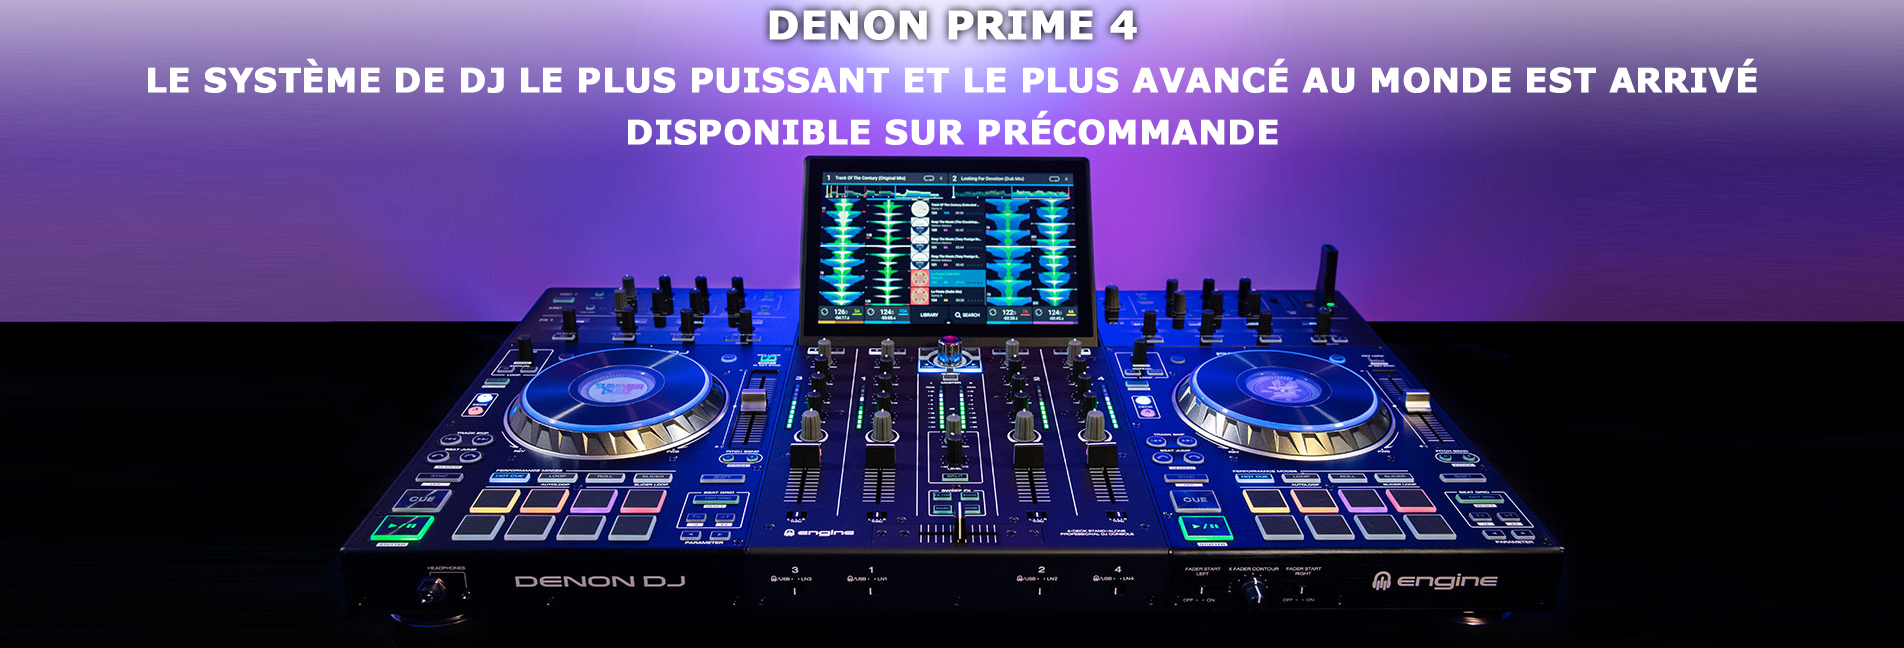 DENON DJ PRIME 4